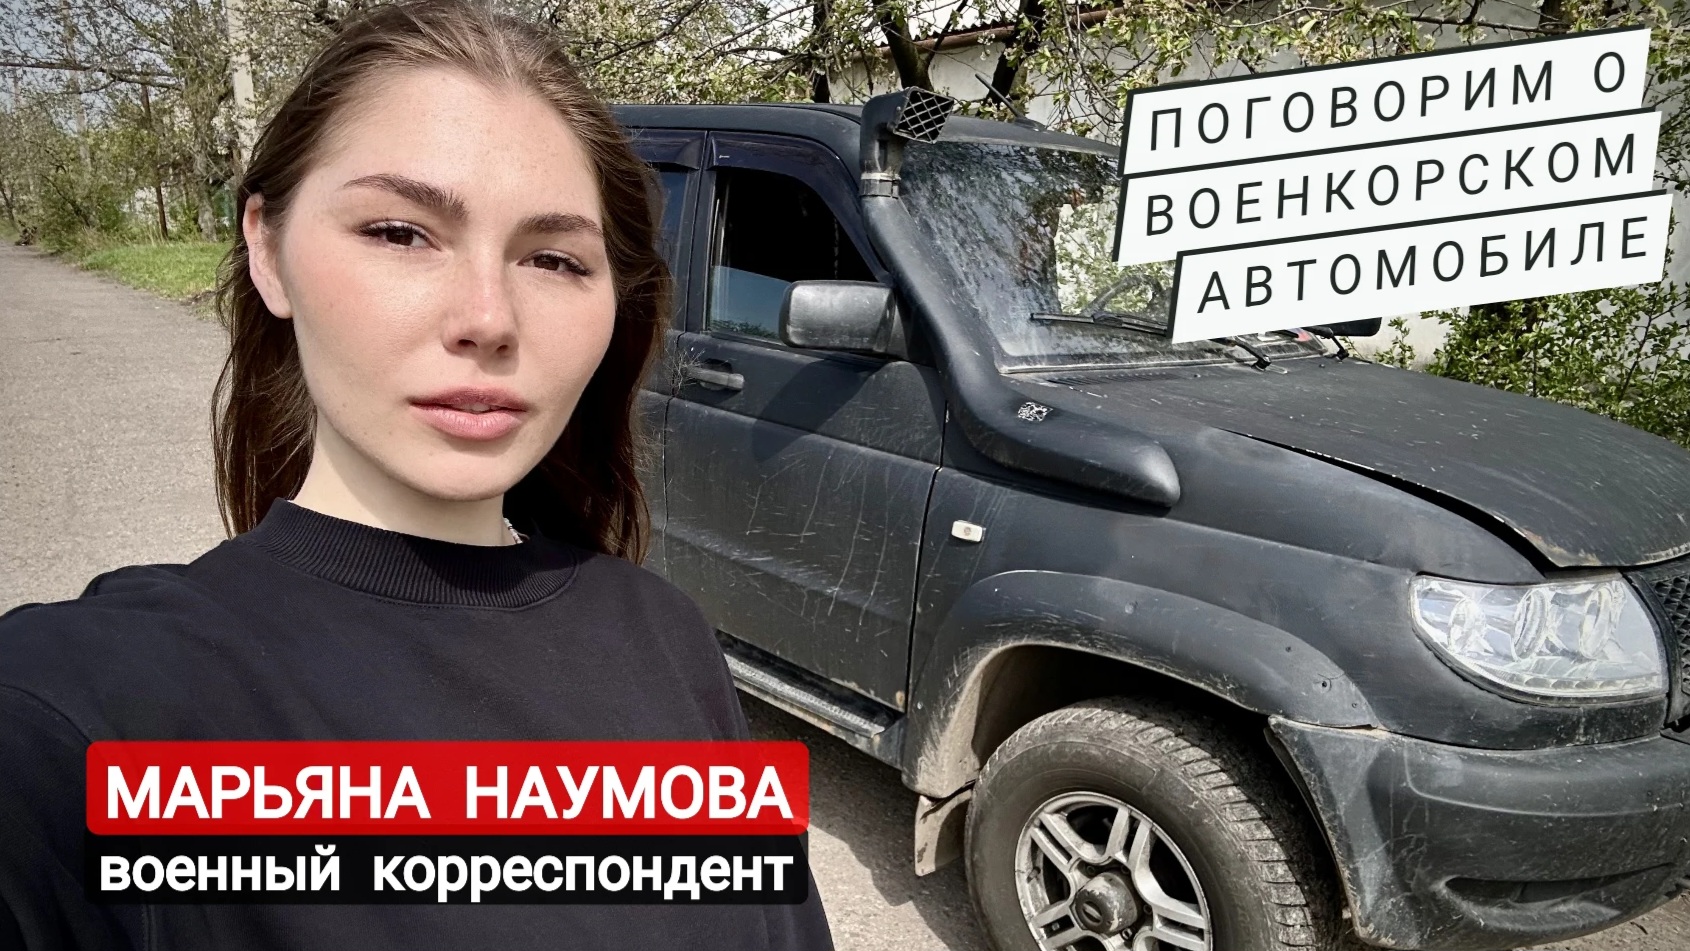 Поговорим о военкорском автомобиле : военный корреспондент Марьяна Наумова, г. Горловка, ДНР